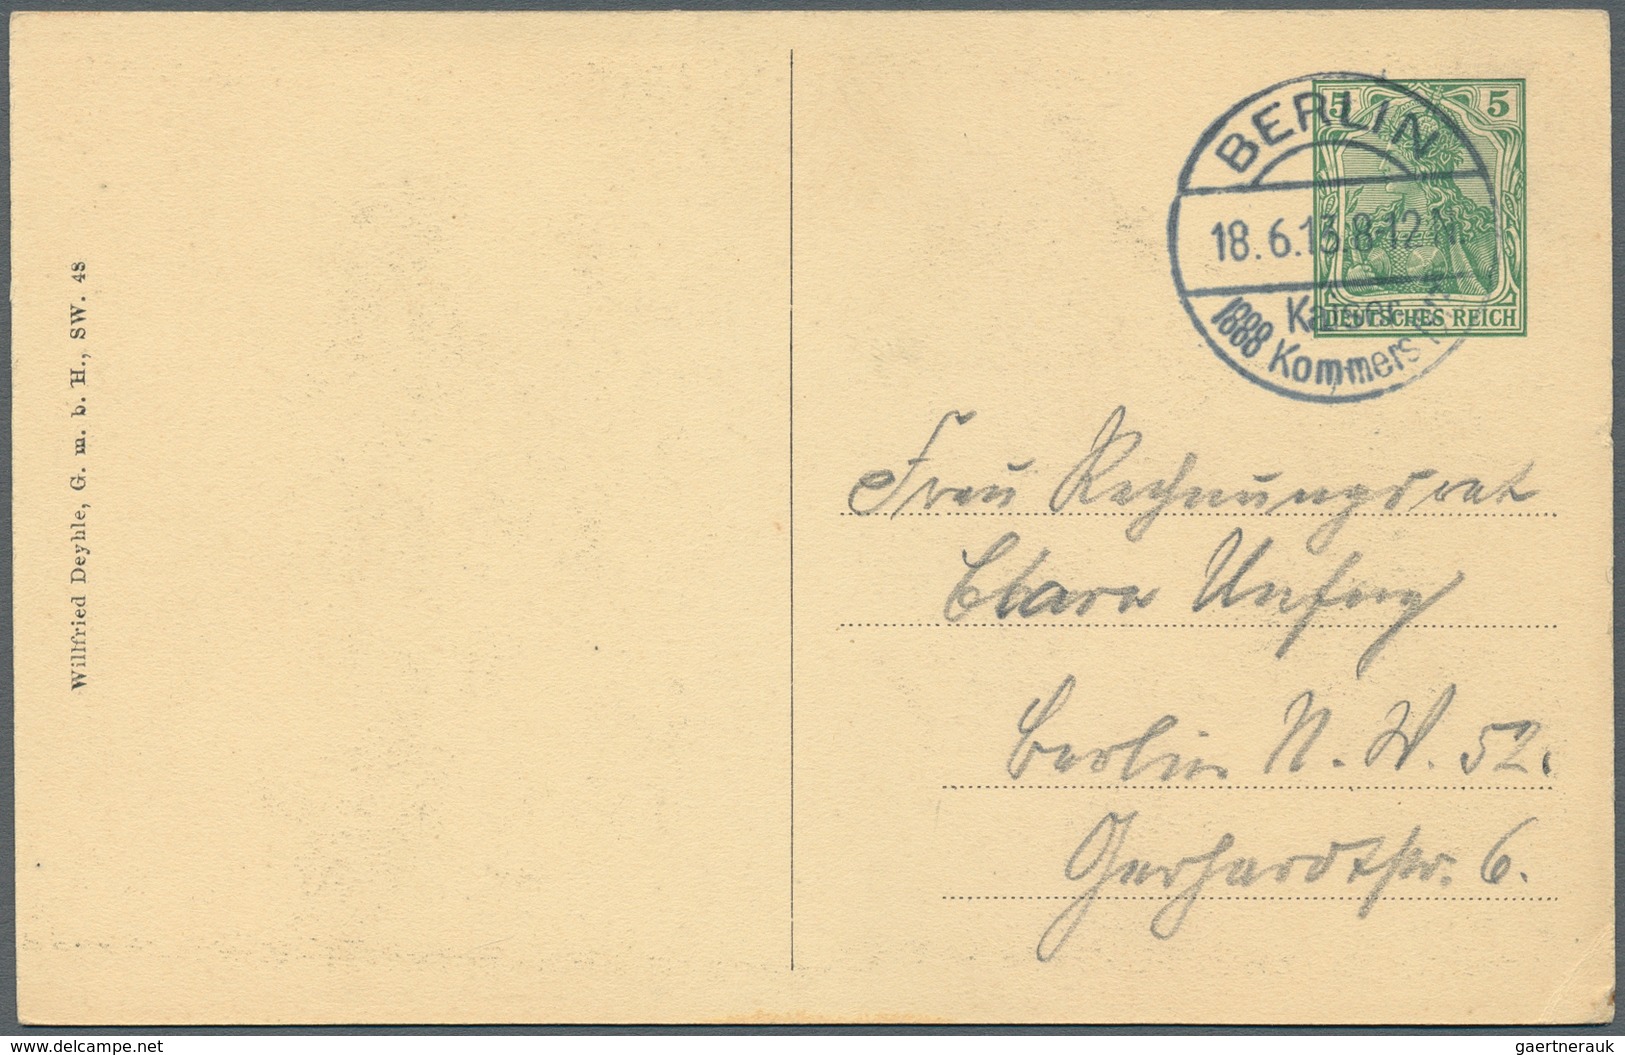 31445 Deutsches Reich: 1874/1921, vielseitige Partie von ca. 115 Briefen, Karten und Ganzsachen, teils Bed